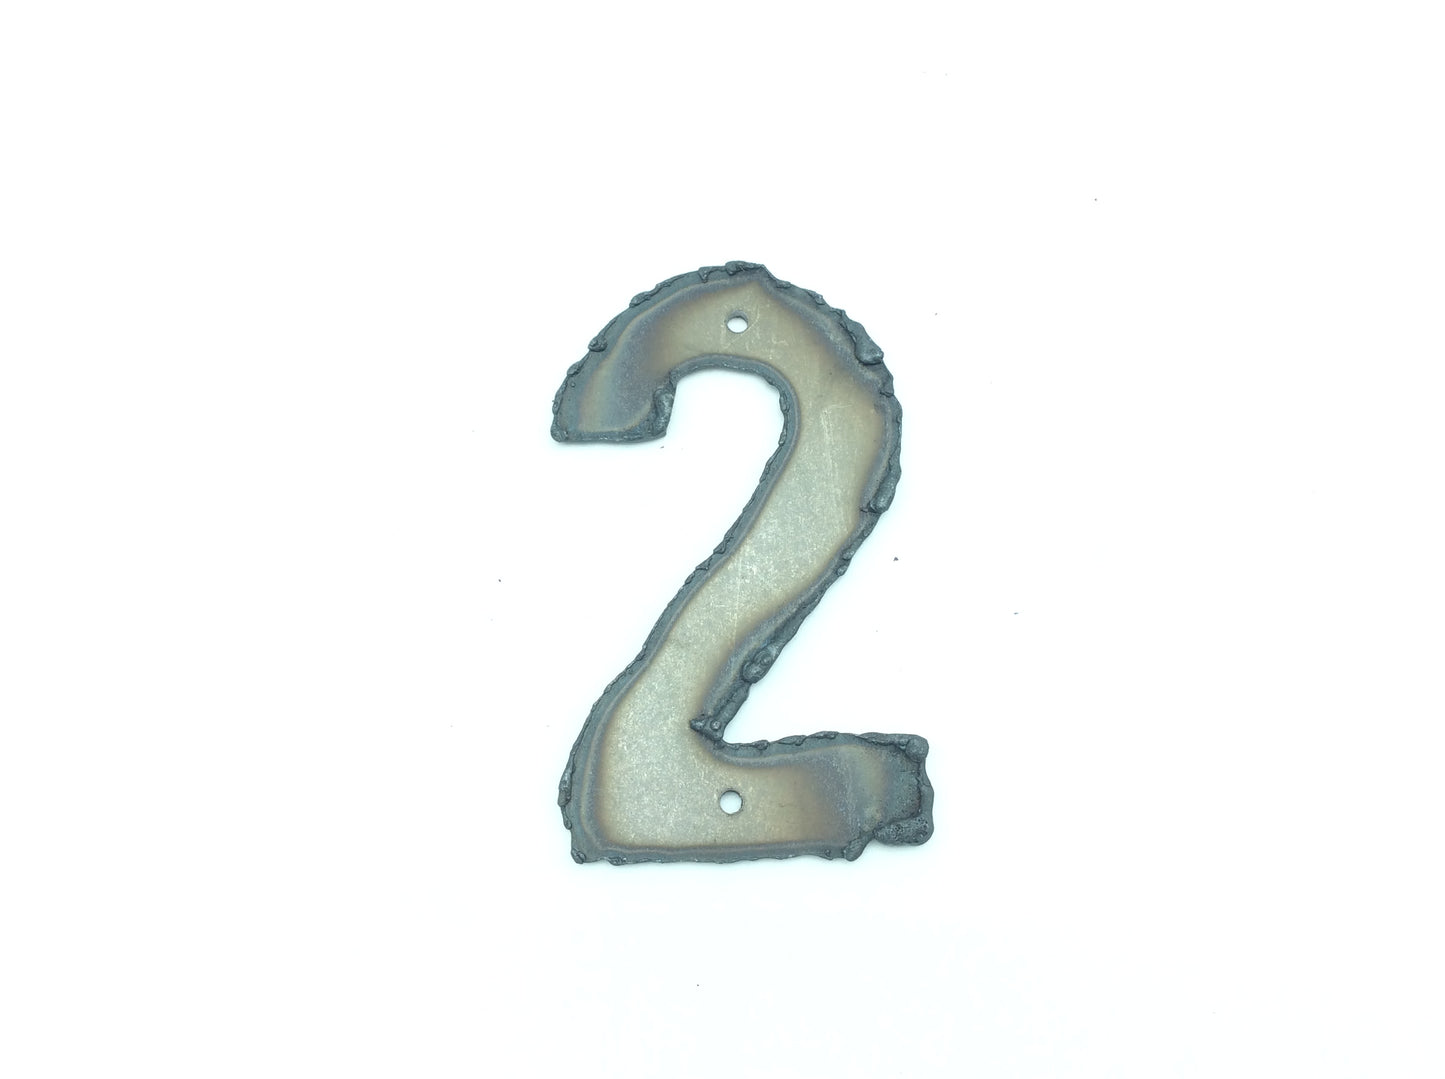 2201-2 Numero civico in ferro battuto - Numeri civici